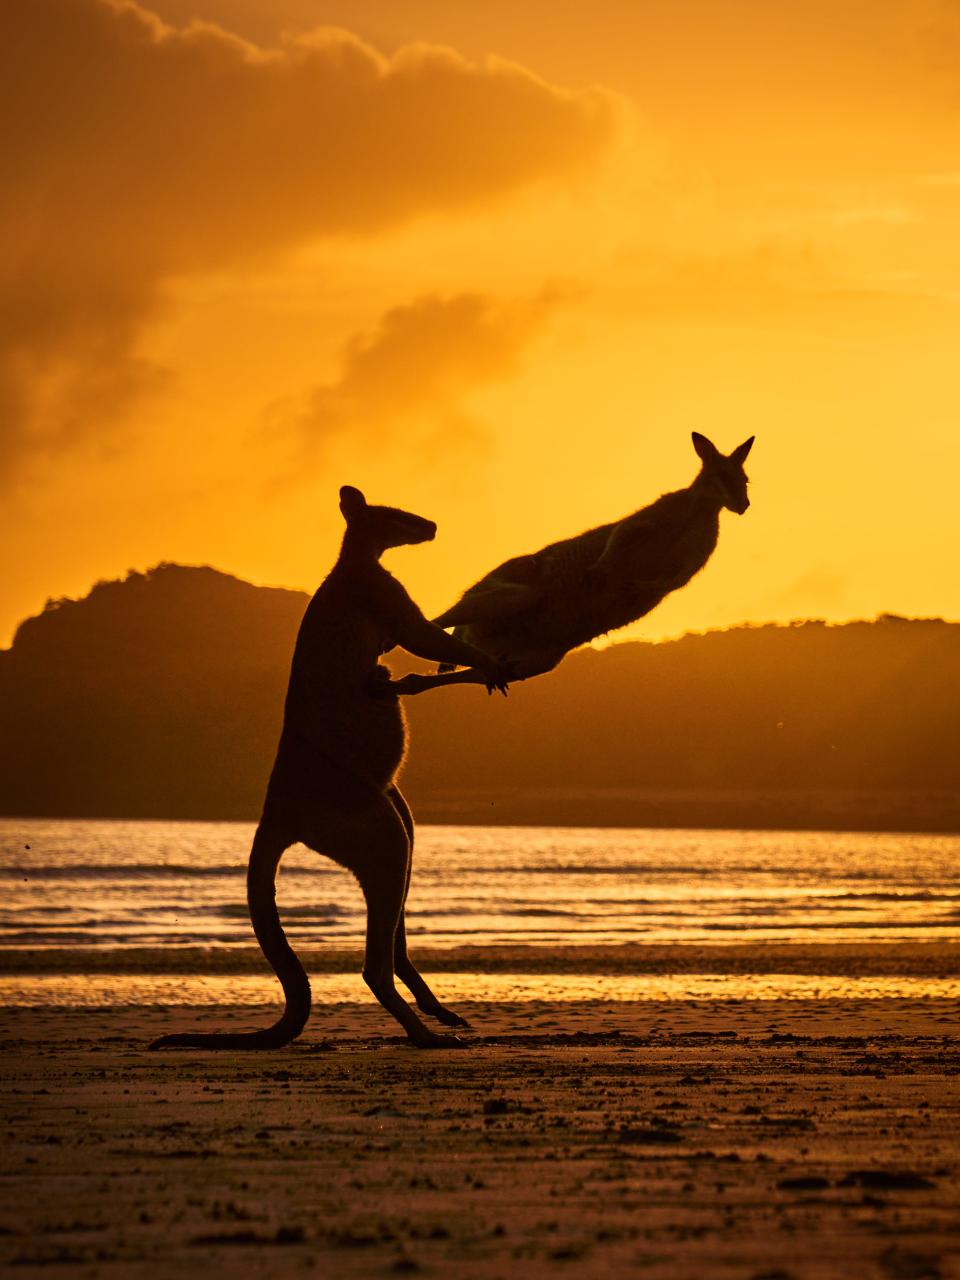 A wallabie kicks another at sunset on a beach